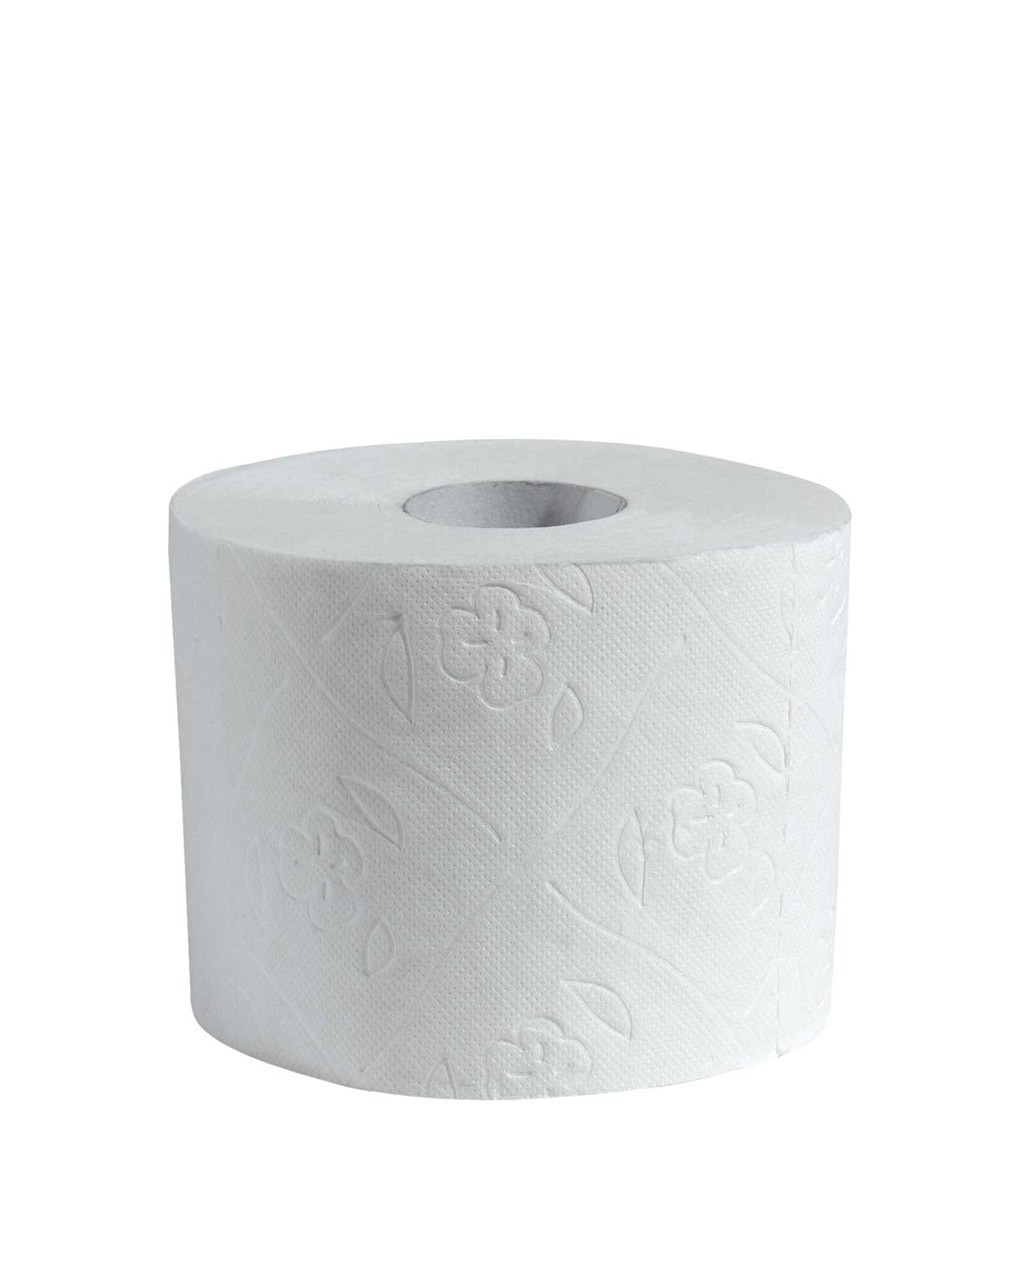 CWS Toilettenpapier Excellence hochweiss 4-lagig - 48 Rollen